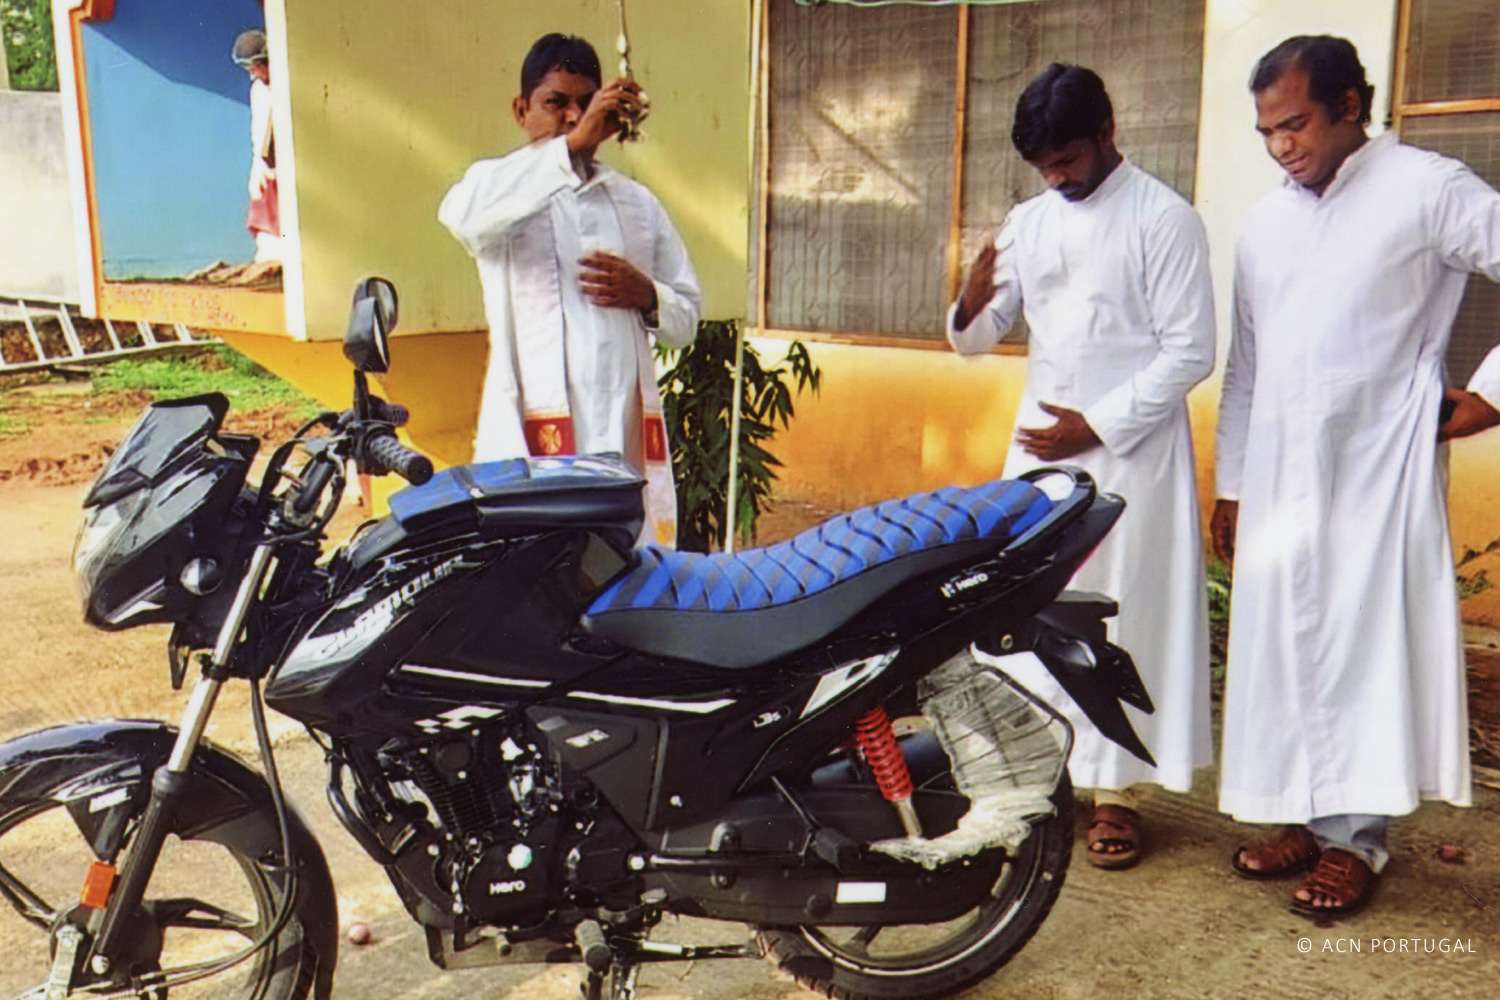 ÍNDIA: Um ciclomotor para o seu trabalho pastoral